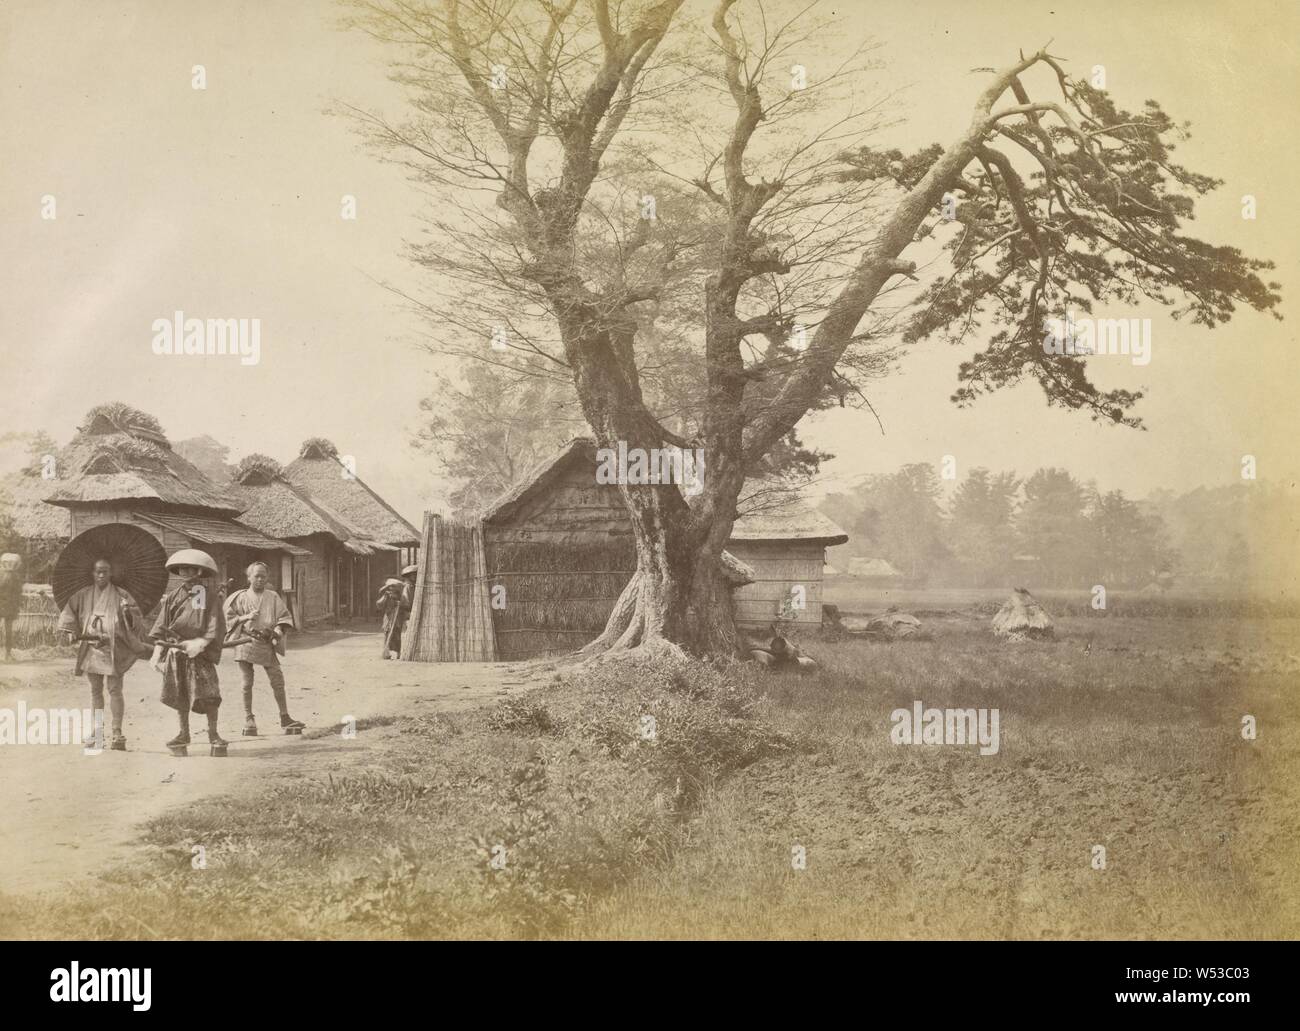 Vista sulla Linea Tokaido, Felice Beato (inglese, nato in Italia, 1832 - 1909), Giappone, 1863 - 1868, albume silver stampa, 21 × 28,8 cm (8 1/4 × 11 5/16 in Foto Stock